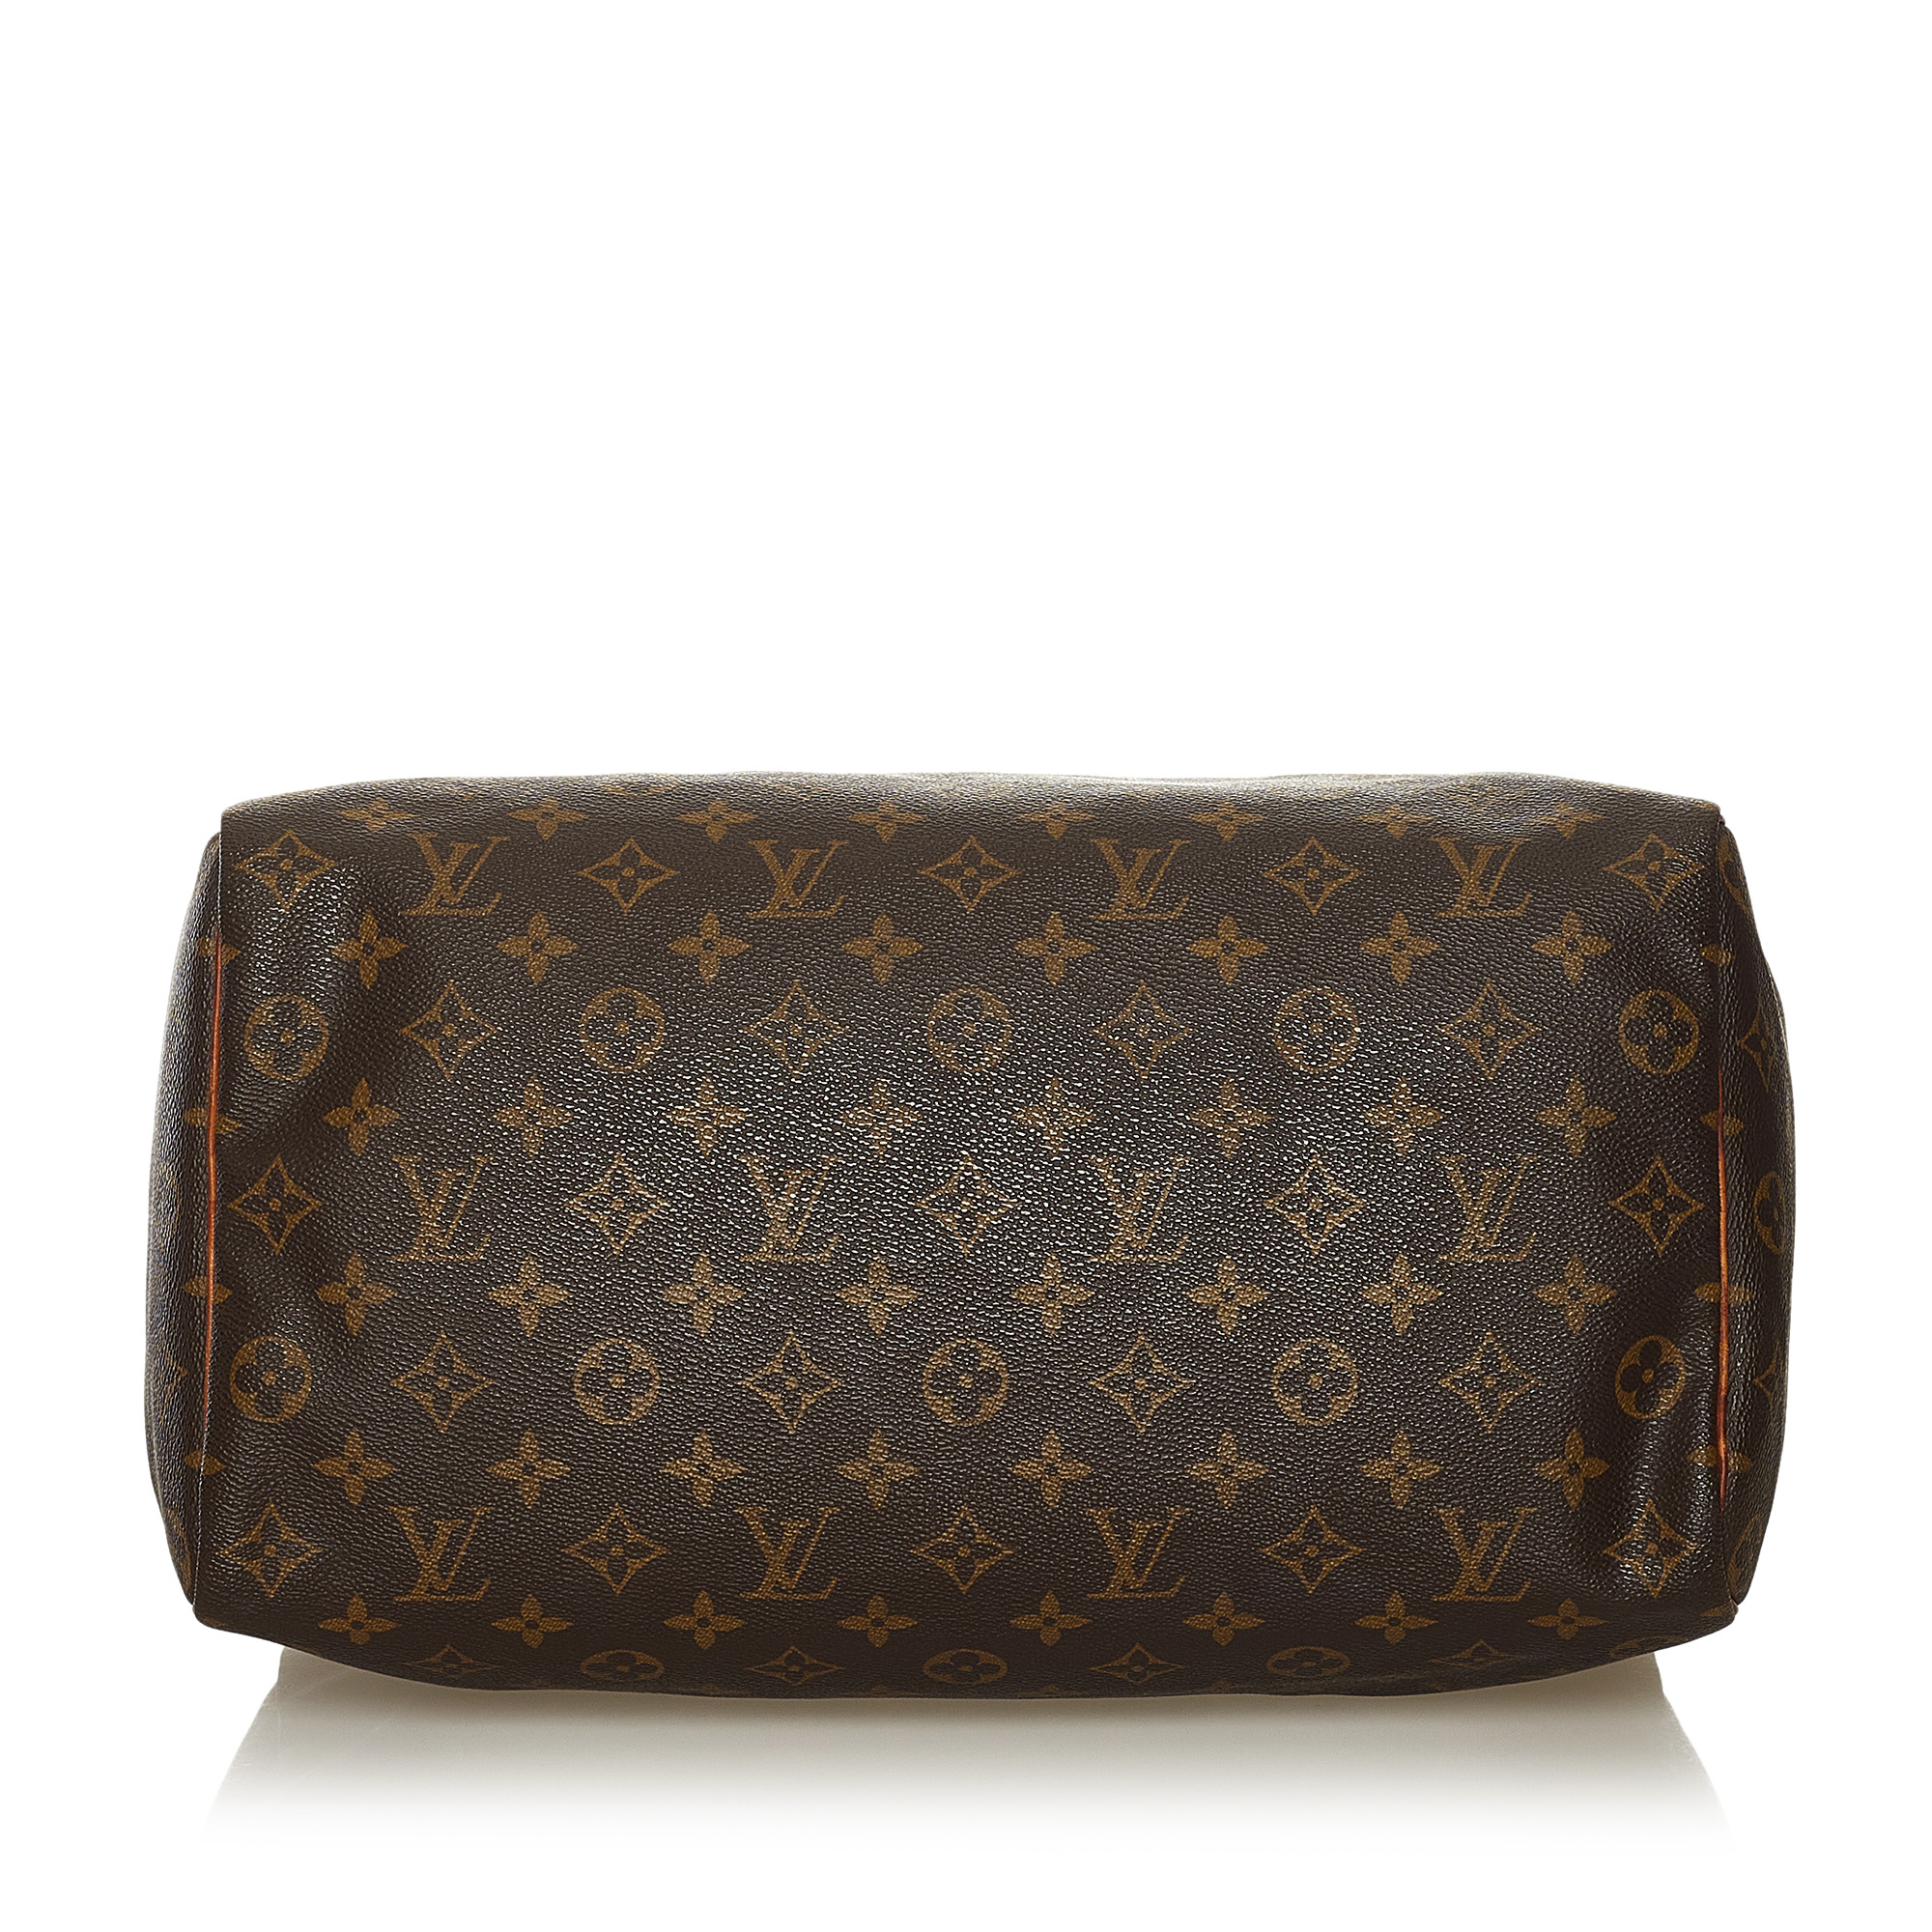 Louis Vuitton, Bags, Authentic Louis Vuitton Speedy Size 35